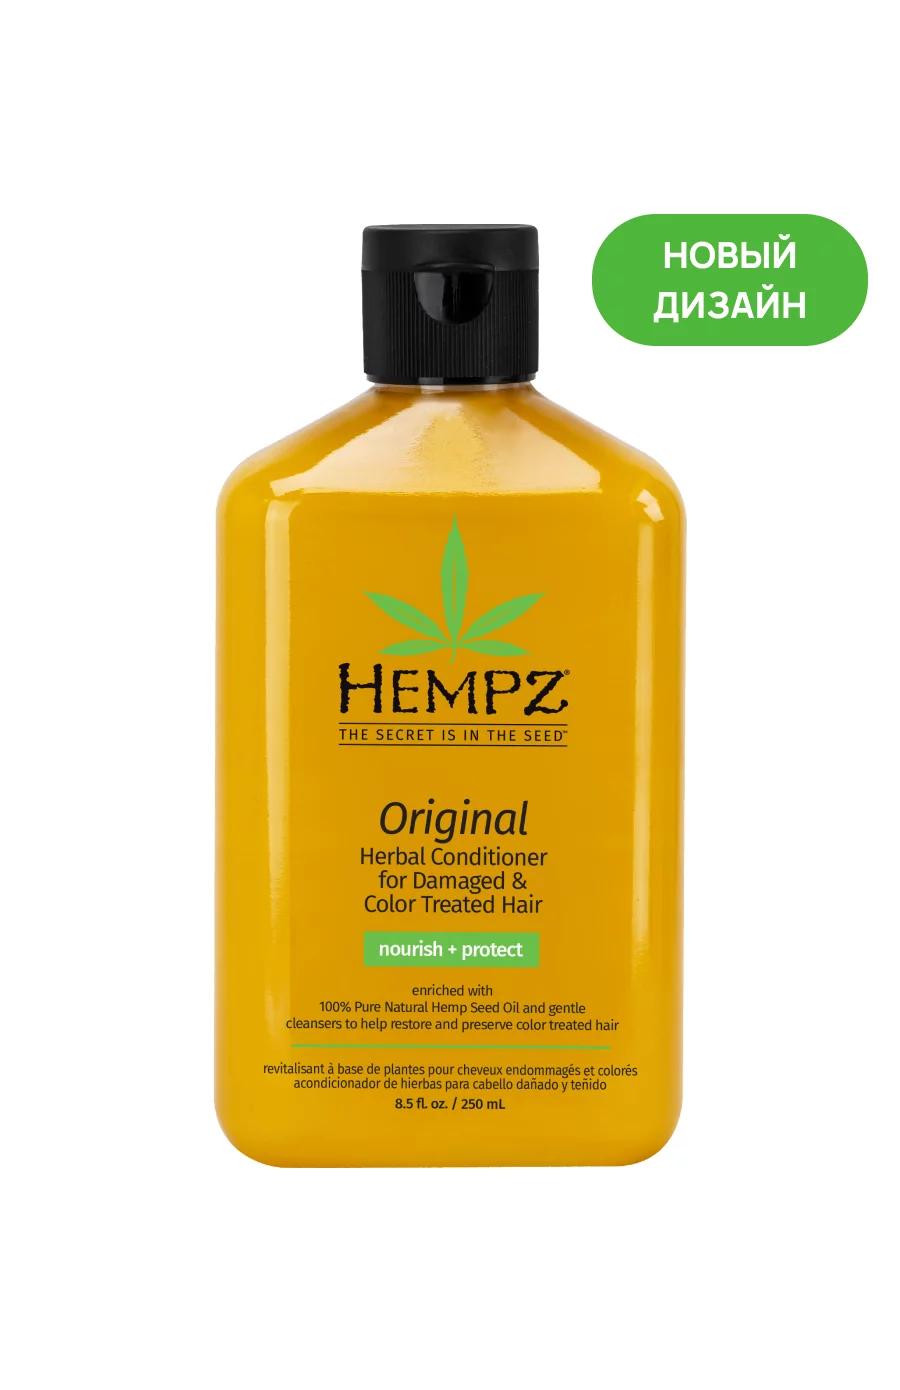 Hempz Кондиционер растительный Оригинальный для поврежденных окрашенных волос / Original Herbal Conditioner For Damaged & Color Treated Hair.